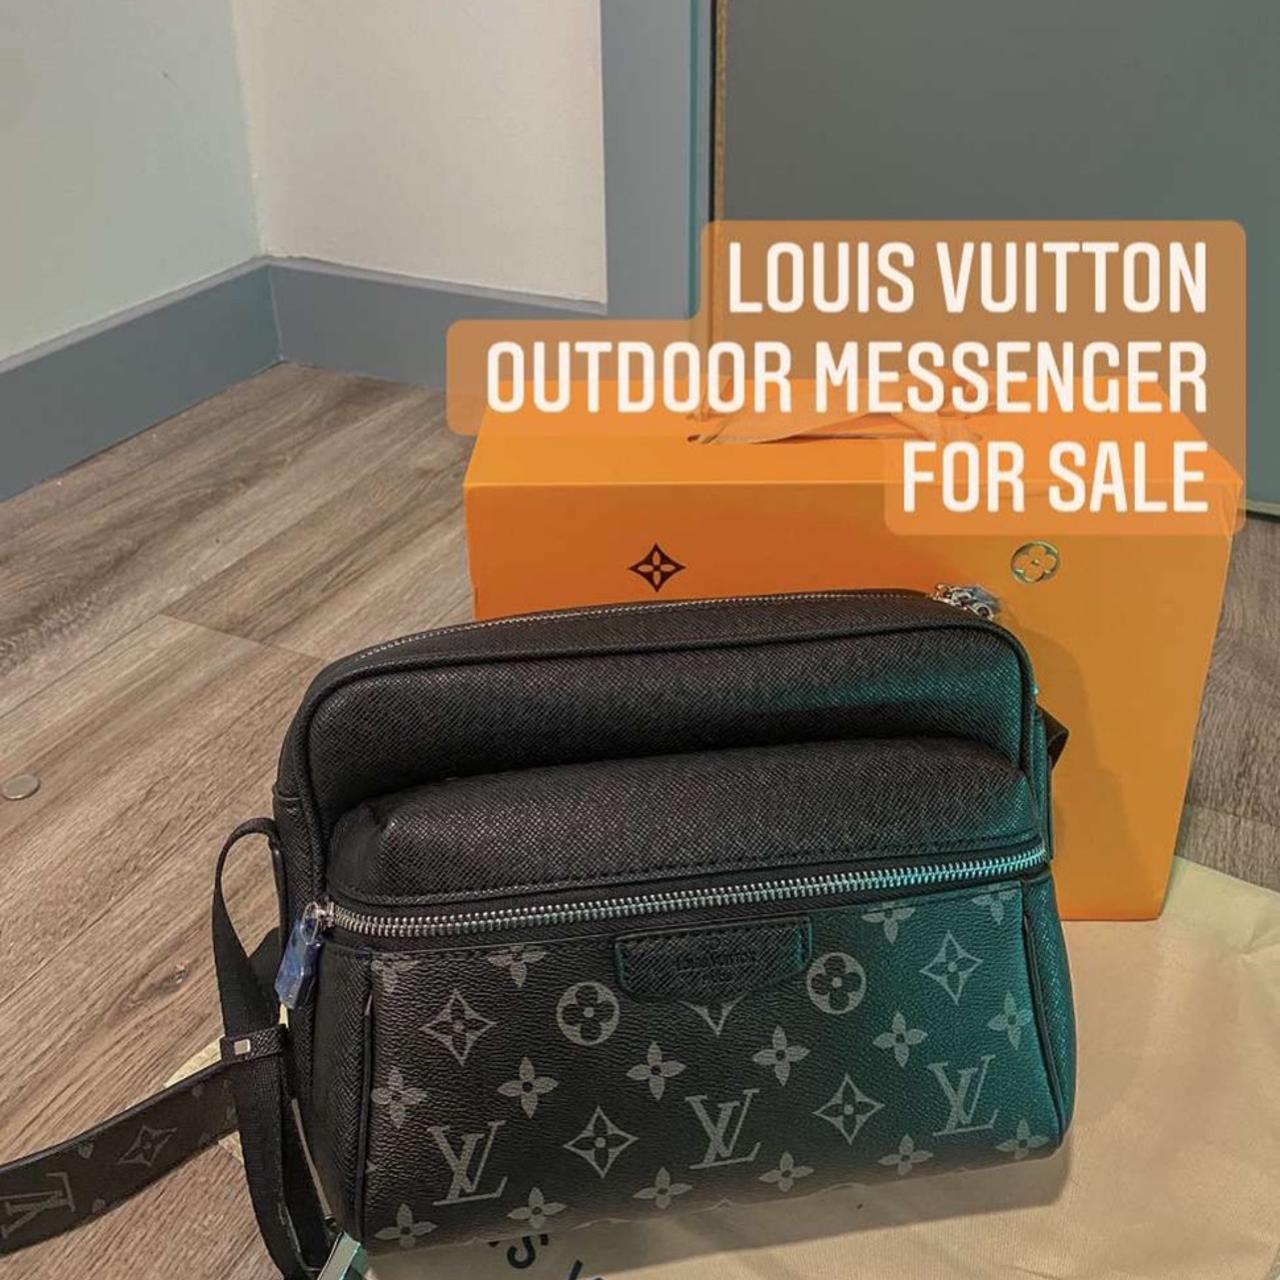 Louis vuitton outdoor messenger bag Very good - Depop